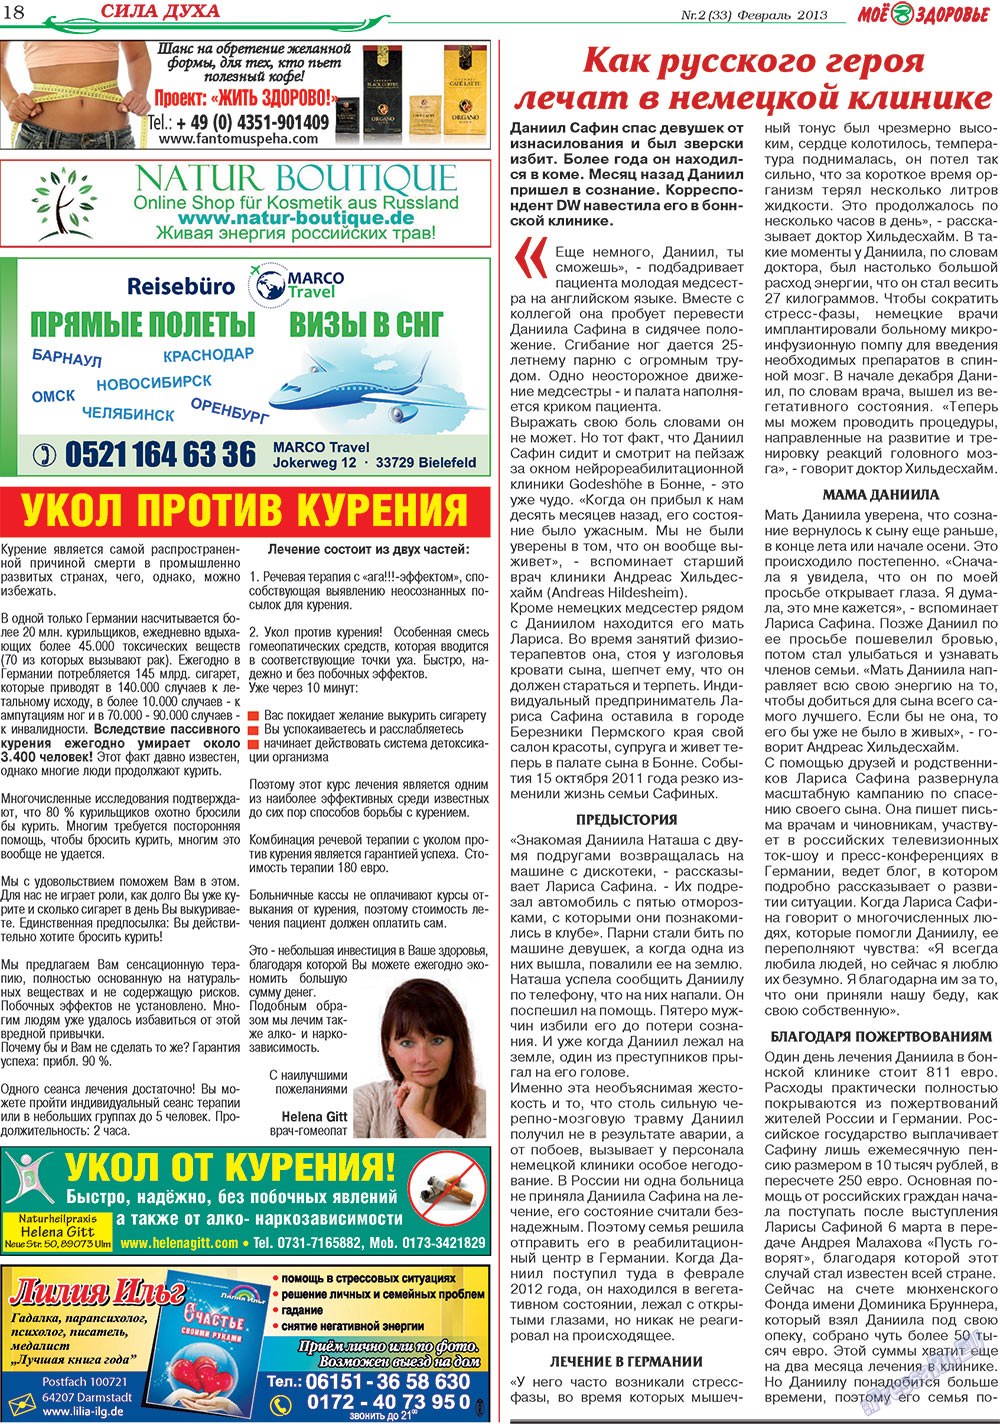 Кругозор, газета. 2013 №2 стр.18